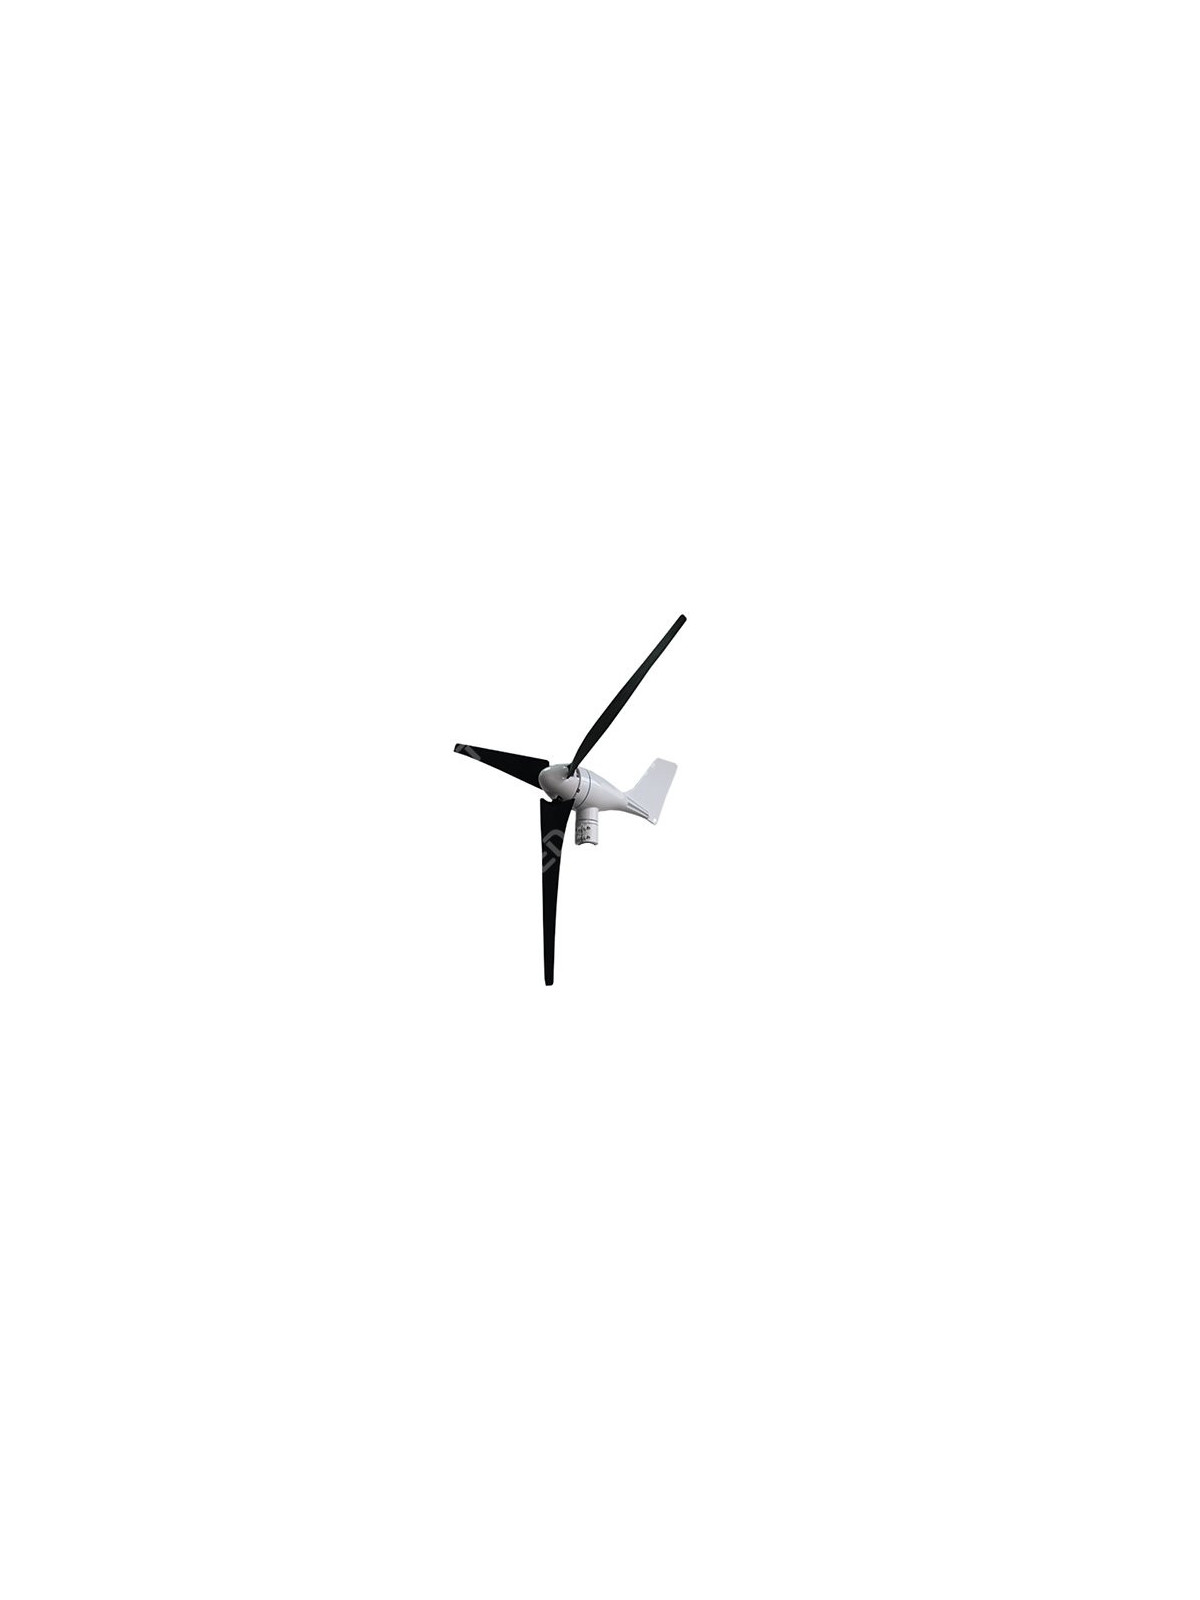 Wind turbine 400W (600W PMAX)